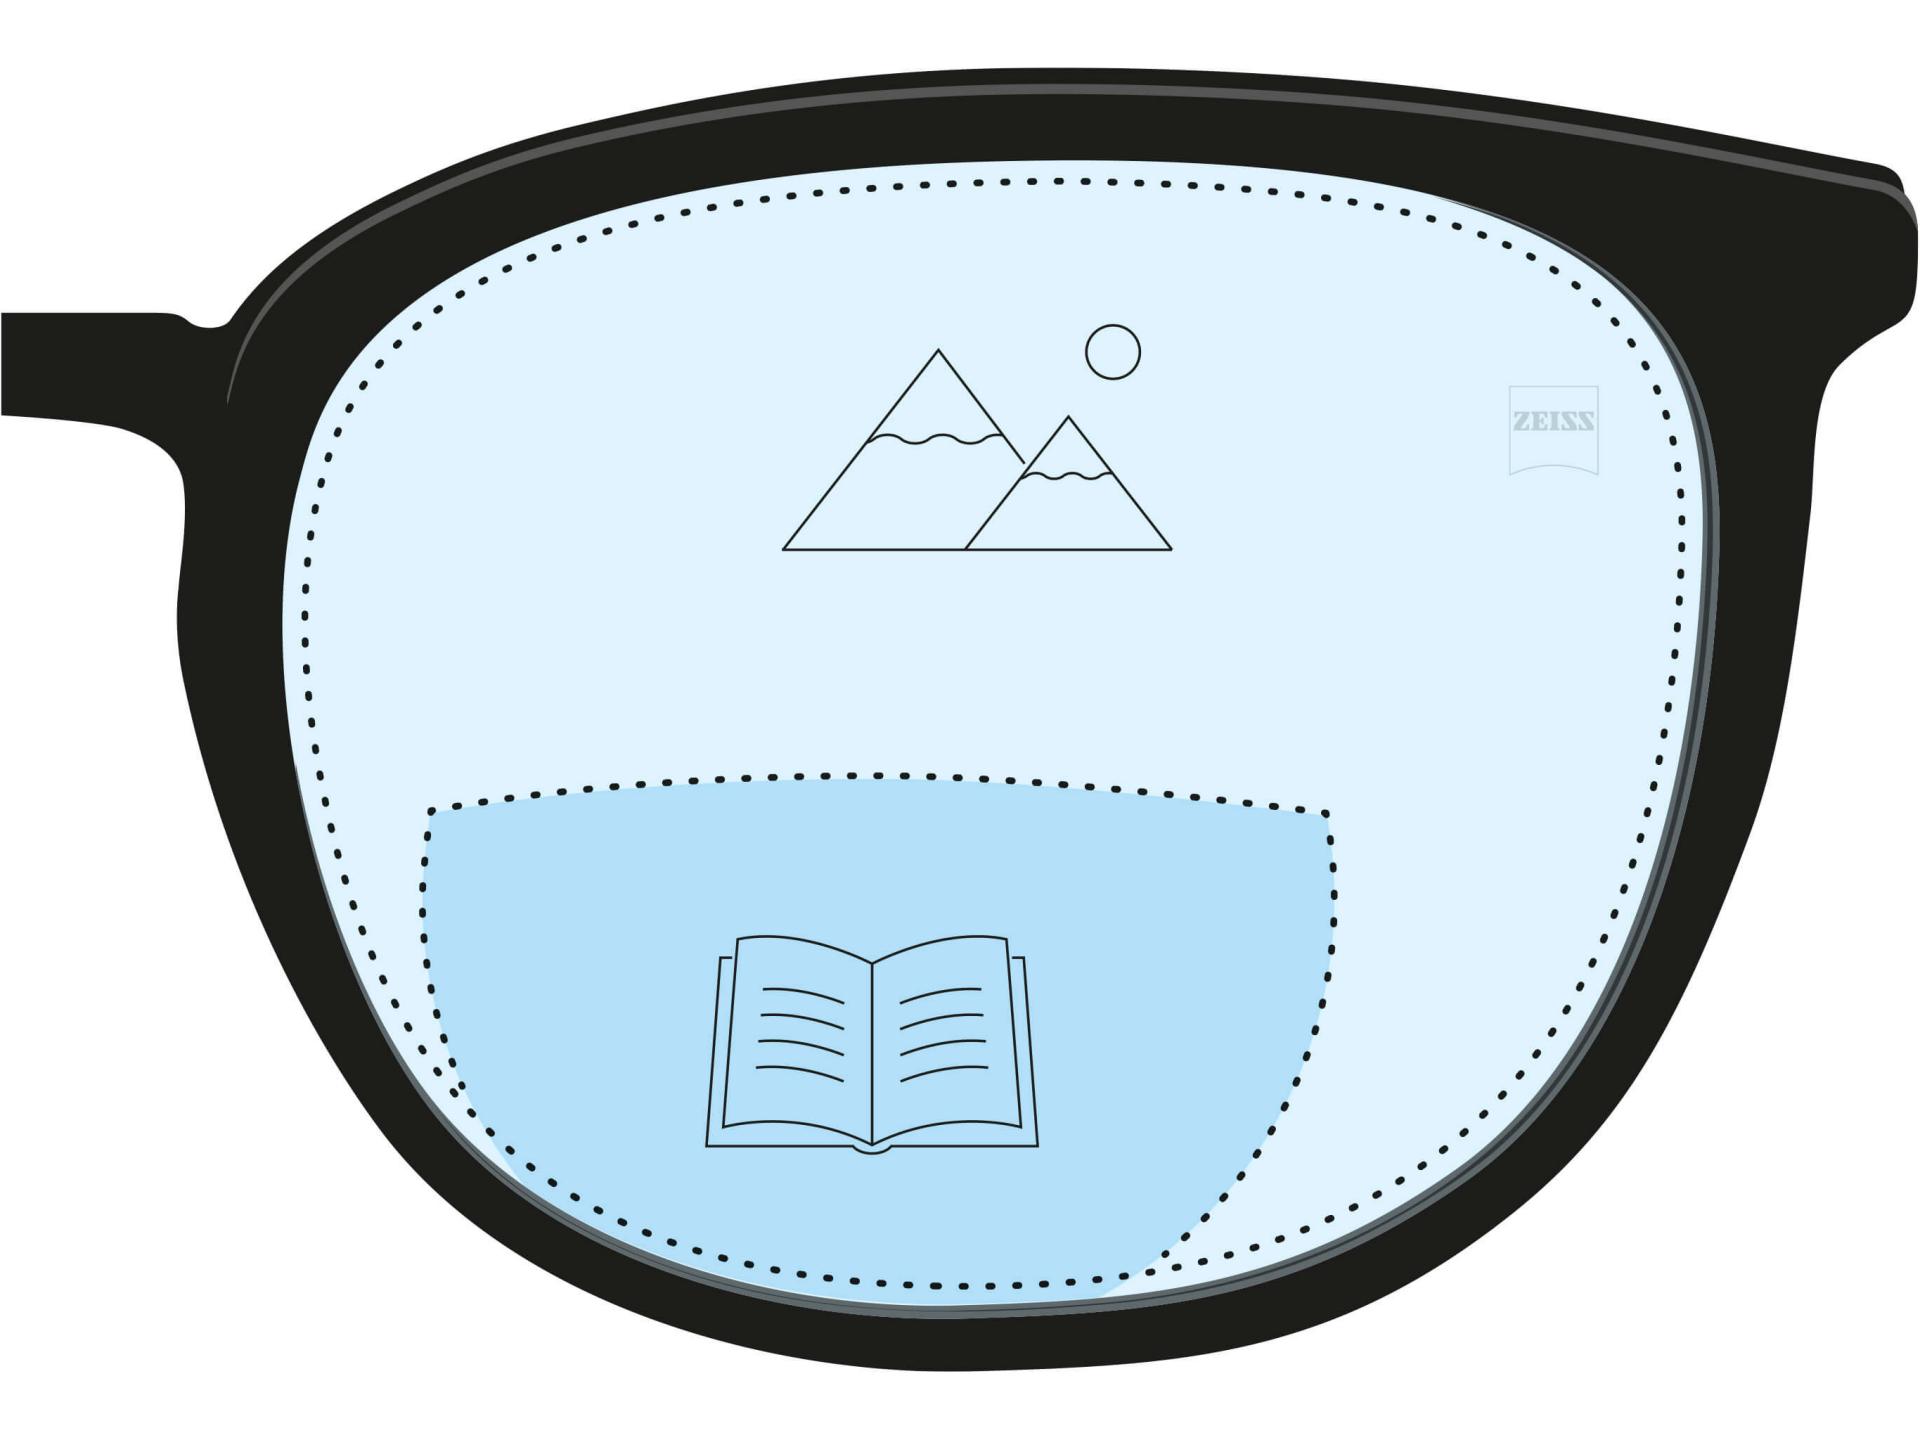 Une illustration d’un verre bifocal. Une zone bleu foncé indique la zone de lecture alors qu’une partie bleu clair sur le verre indique la zone de loin.